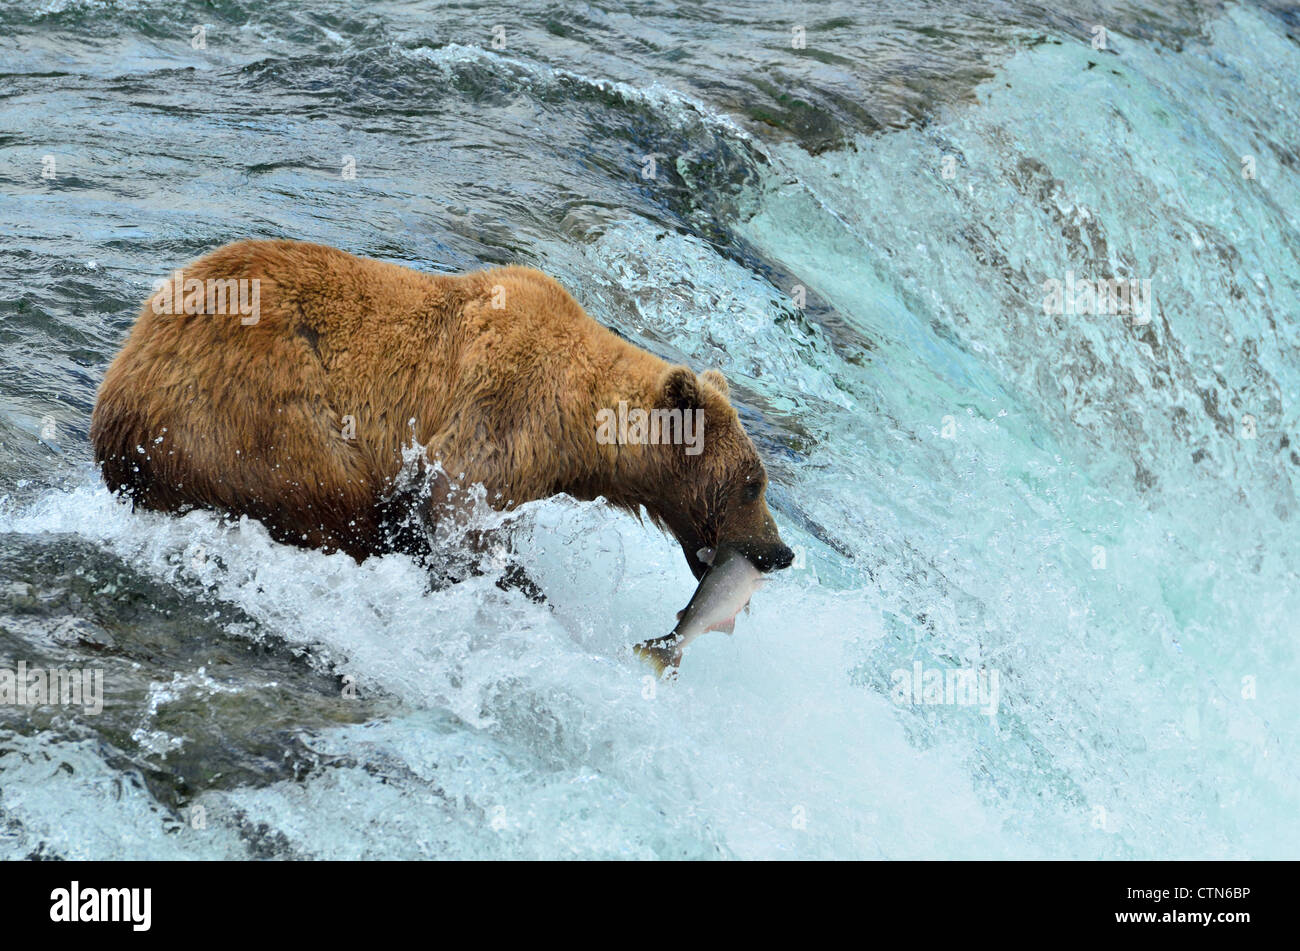 Ikonische Bild von Katmai, schnappte sich ein Braunbär einen Lachs springen die Brooks Falls. Katmai Nationalpark und Reservat. Alaska, USA. Stockfoto